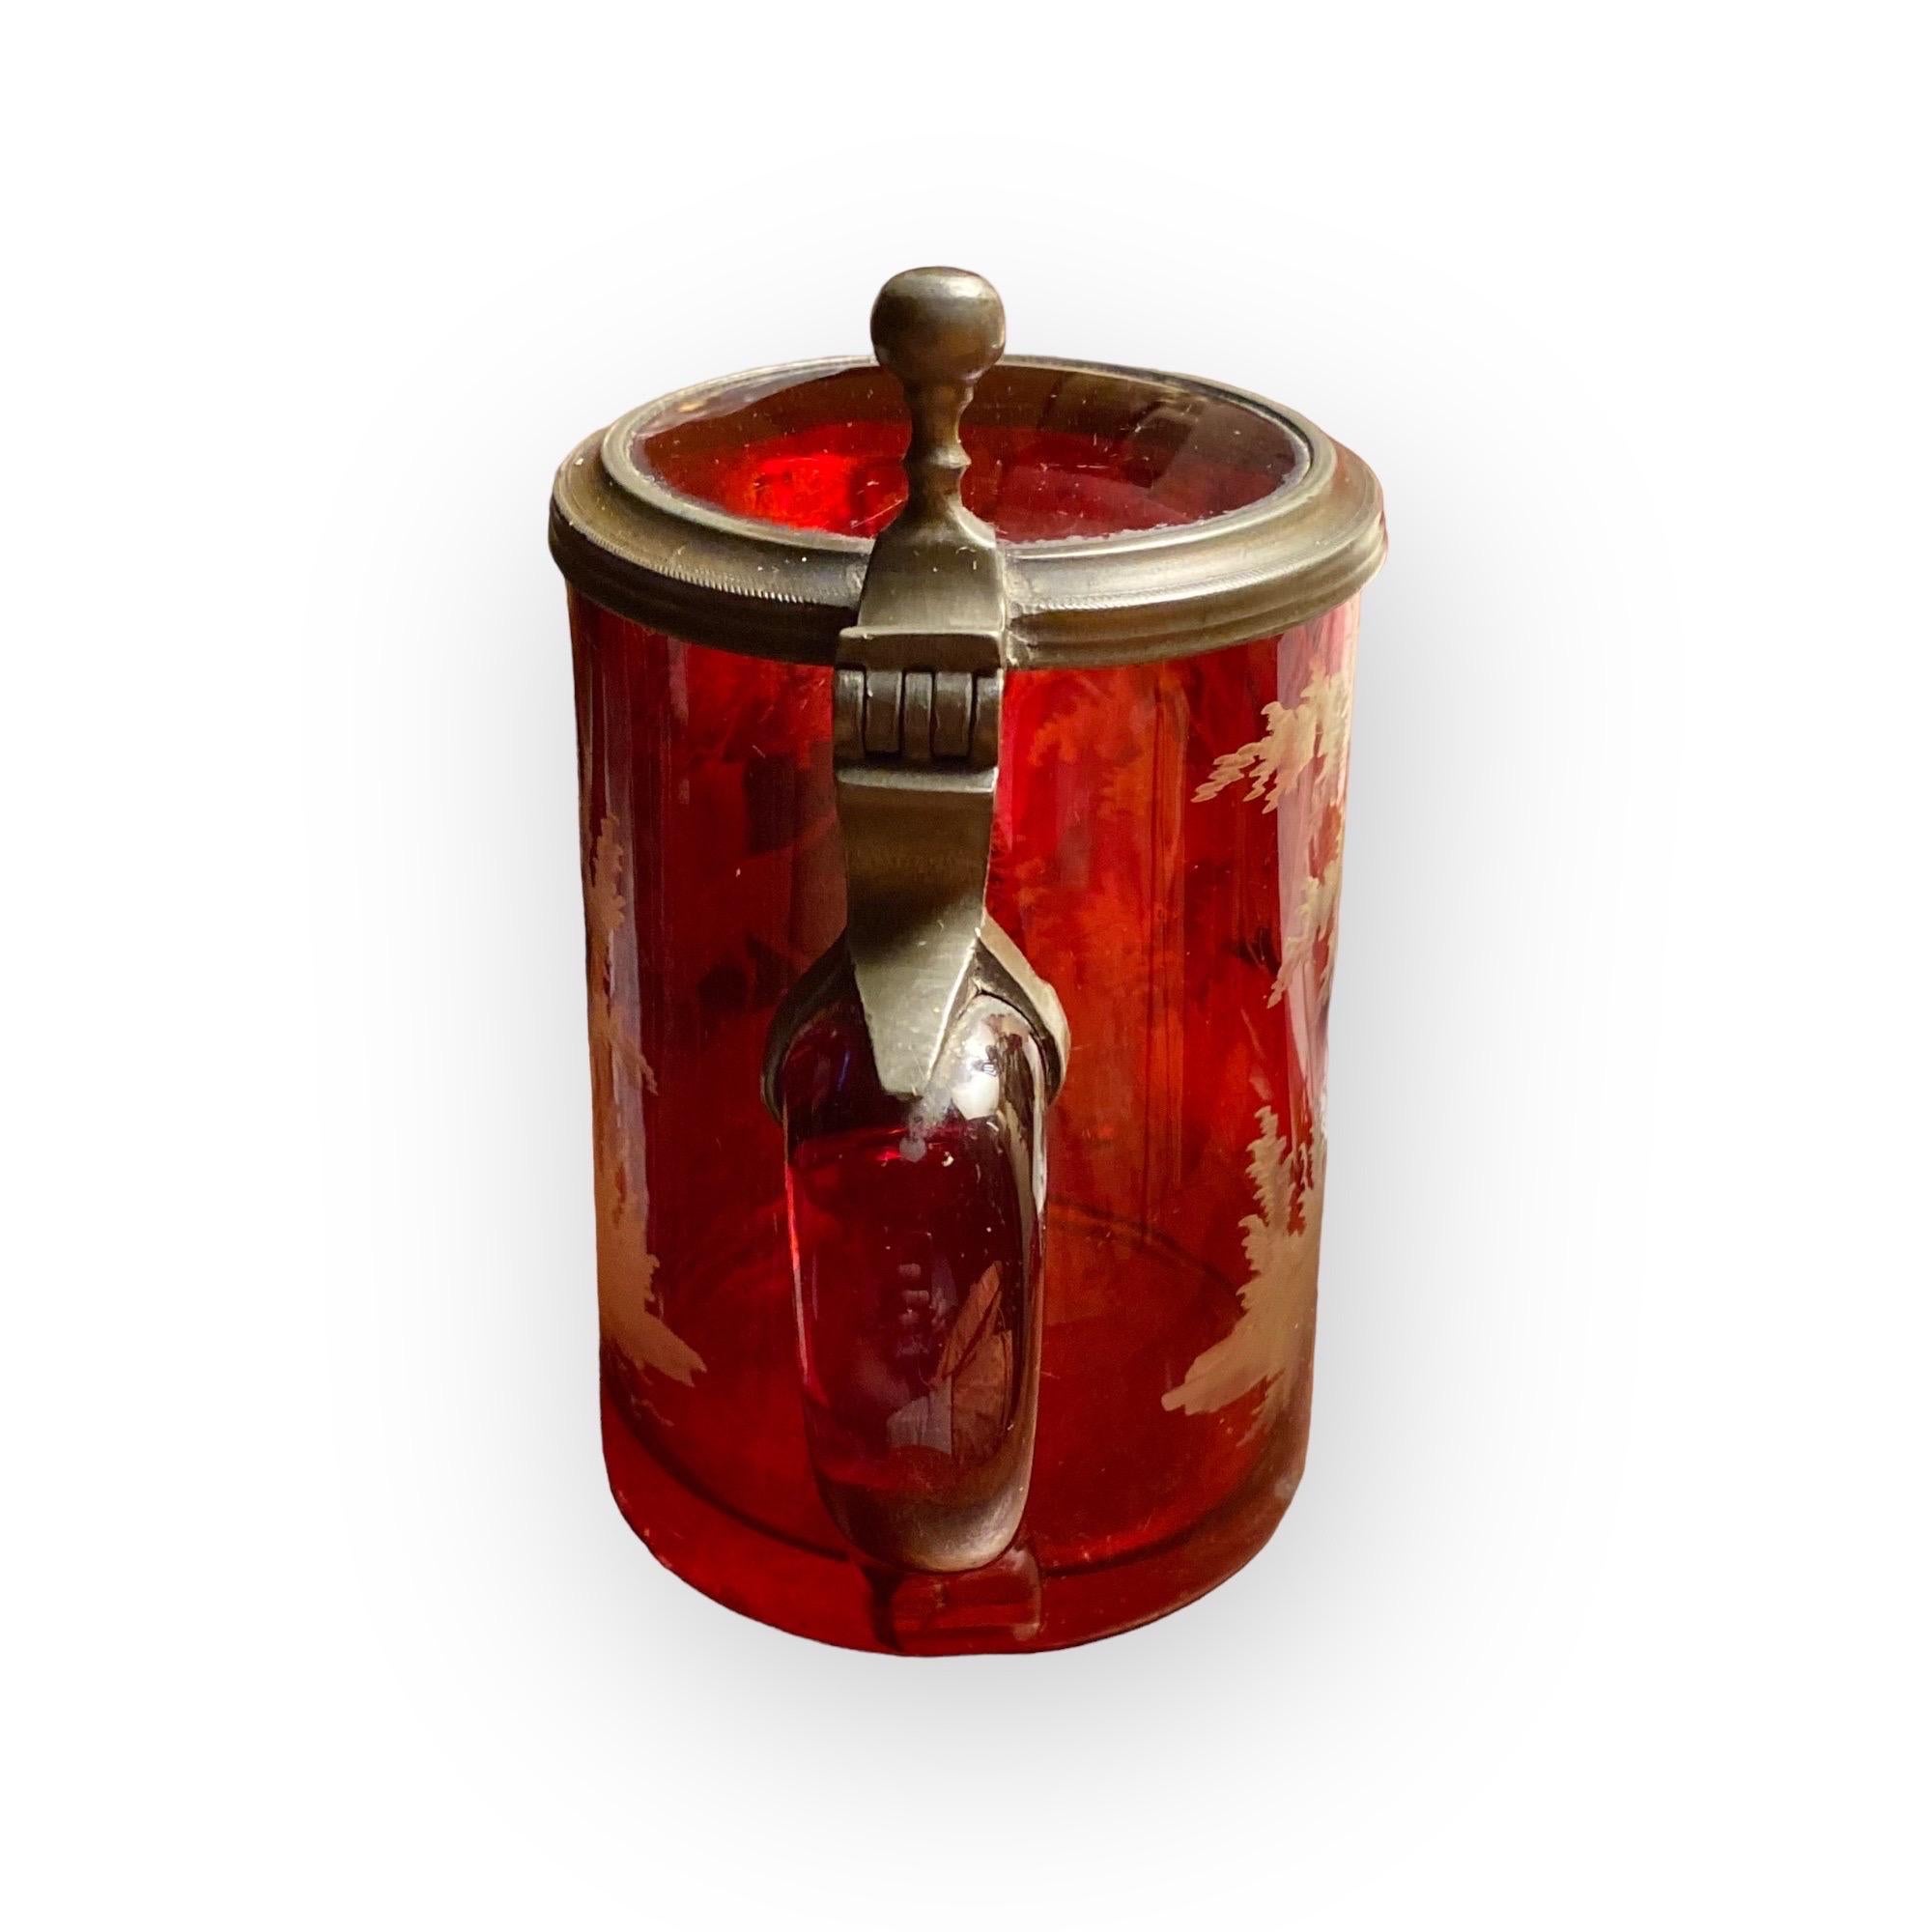 Eine atemberaubende antike böhmischen geätzten roten Blitz Glas Bierkrug. Sie stammt aus der Mitte des 19. Jahrhunderts. Dieser Artikel wurde in Handarbeit aus Glas hergestellt.
Radierung und Kupferstich, die eine Waldszene und einen Jagdhund